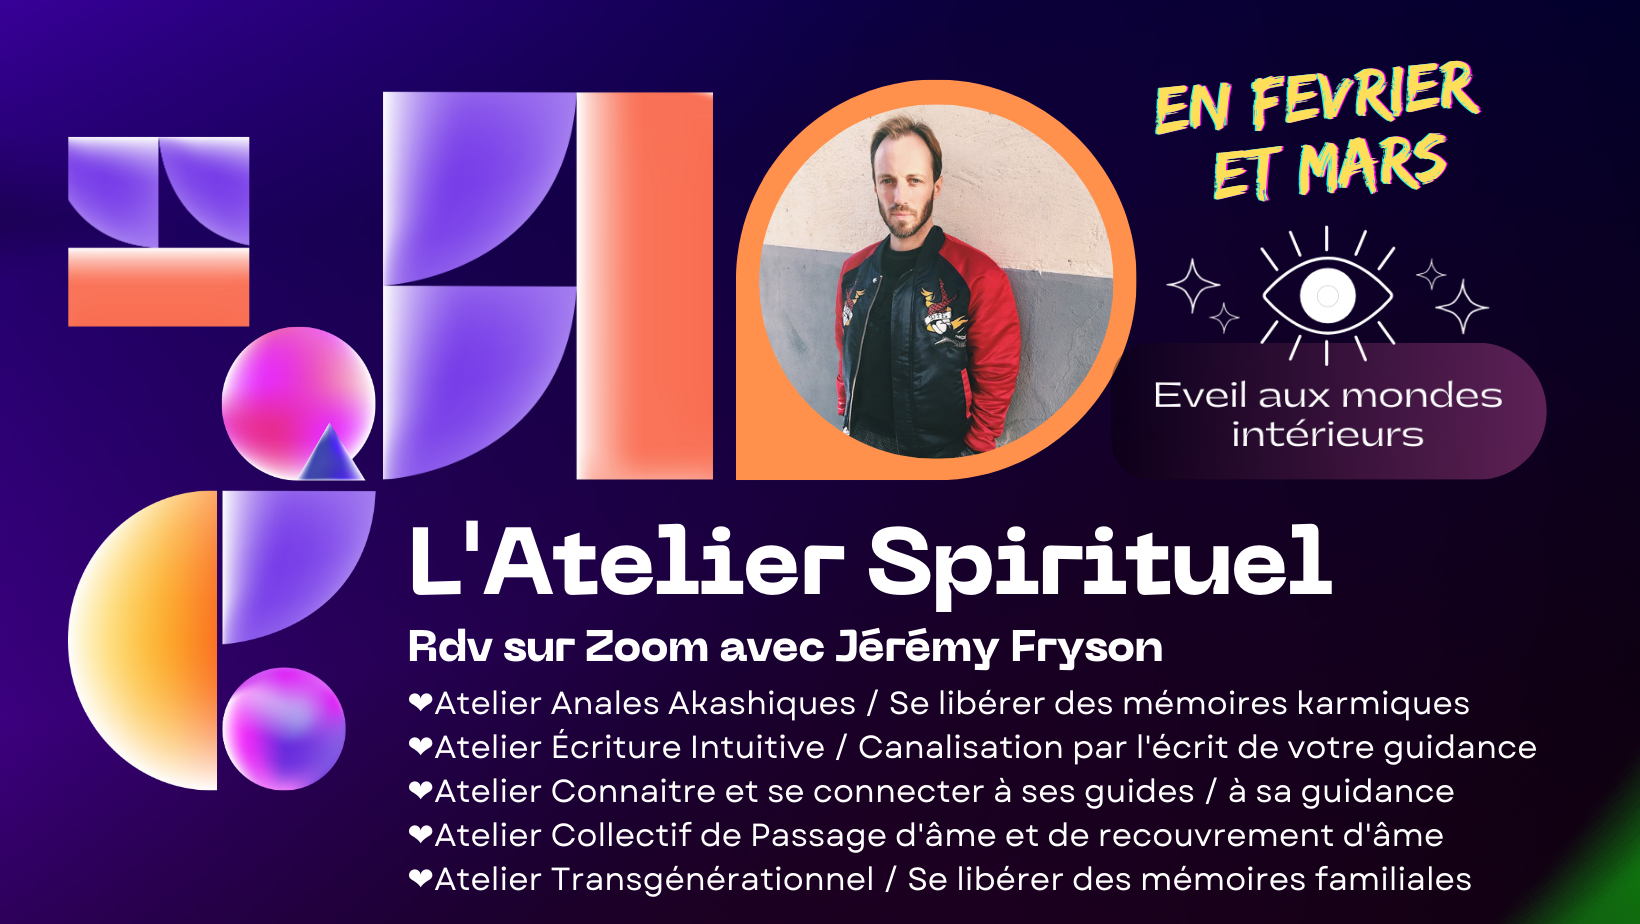 Atelier Spirituel : Annales Akashiques et Mémoires karmiques / Écriture Intuitive / Guidance / Transgénérationnel